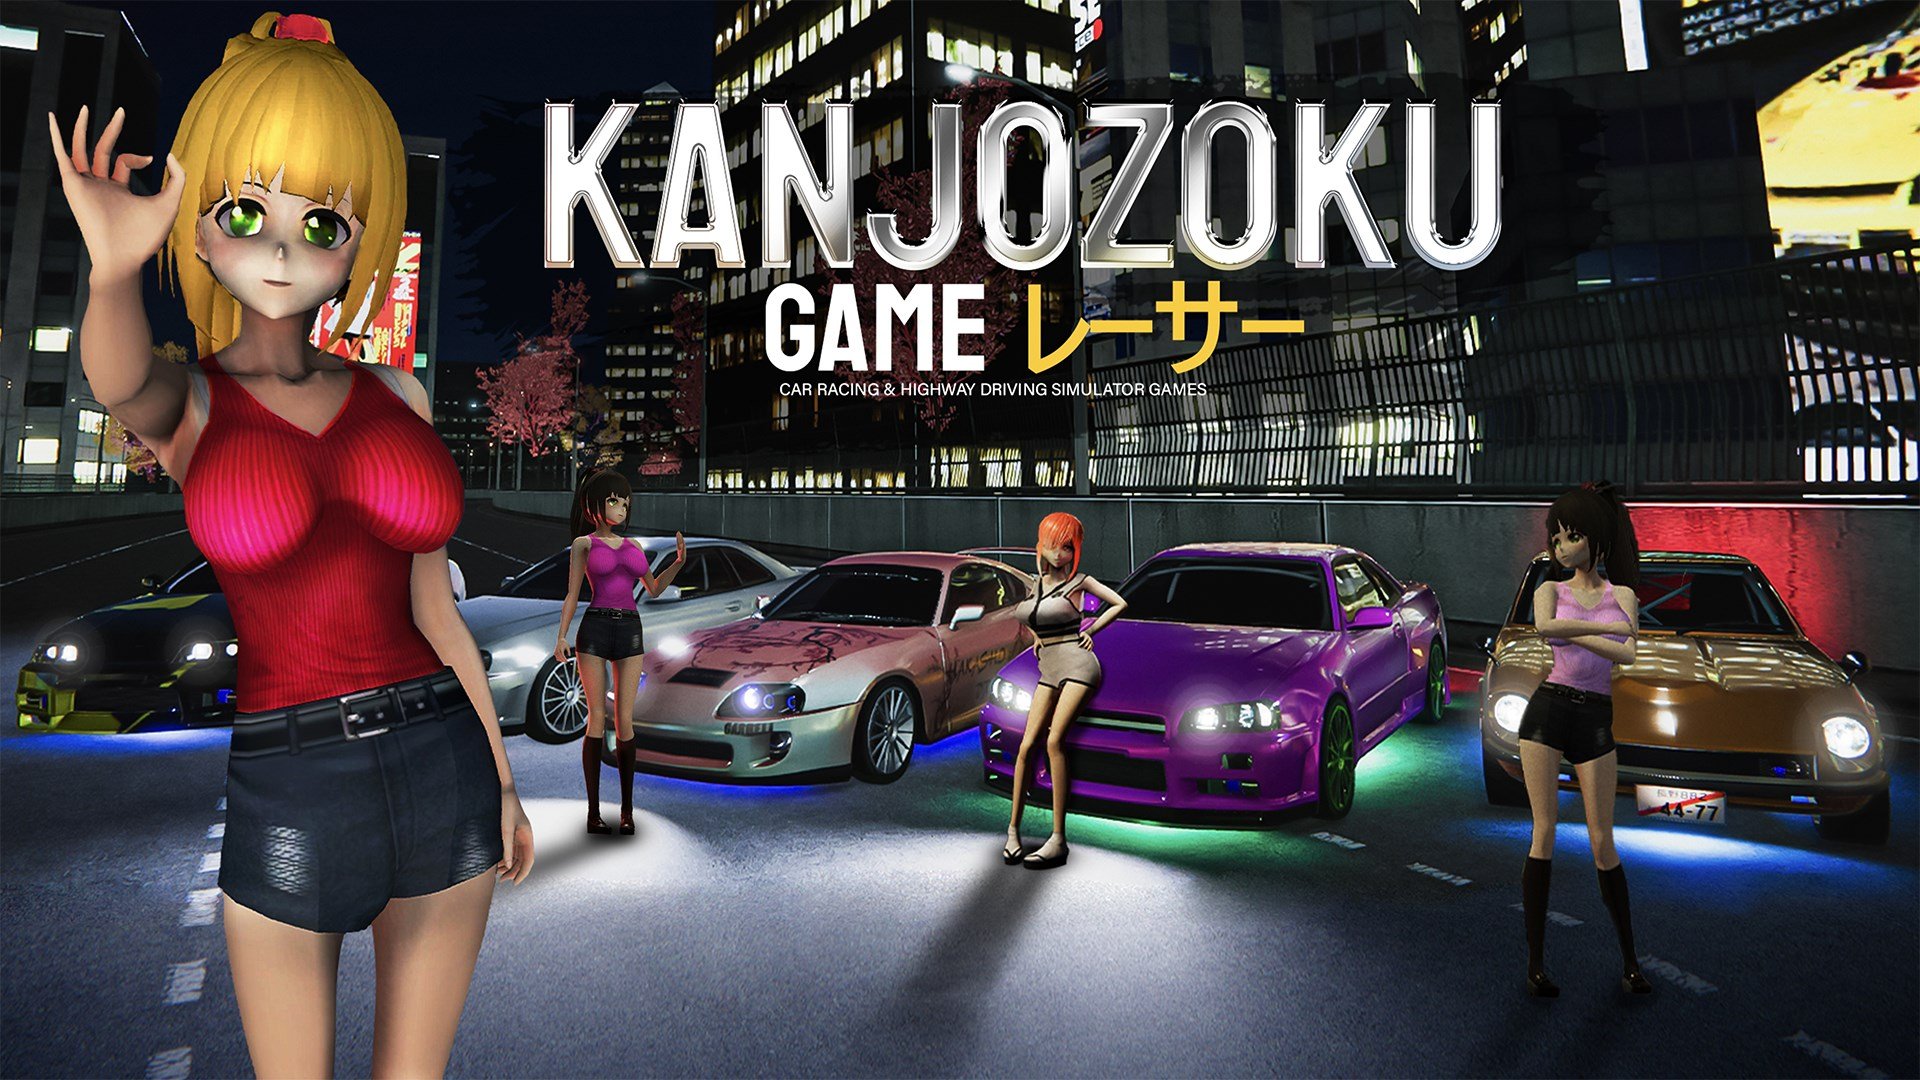 Kanjozoku Game cover image